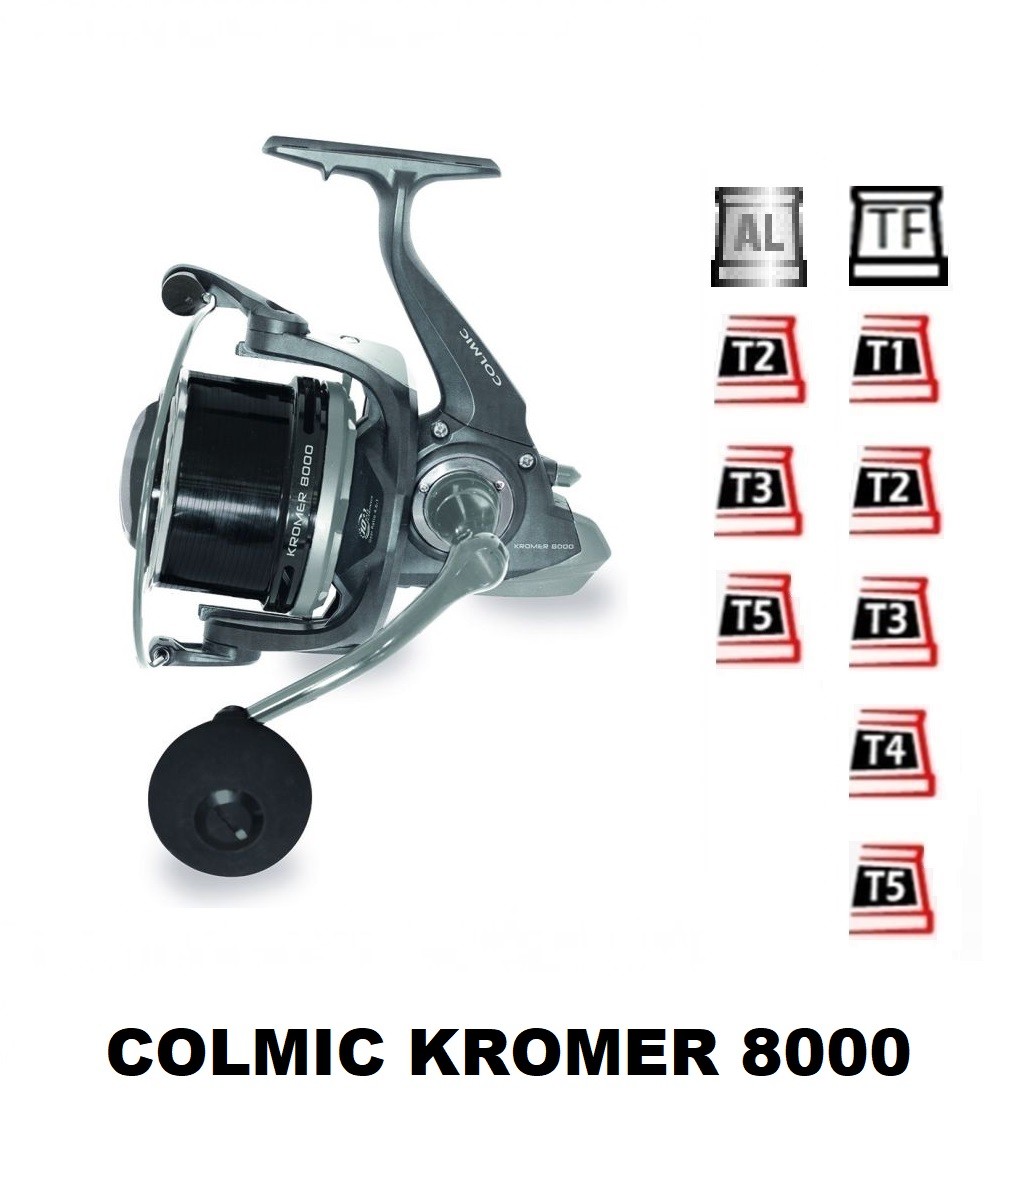 Bobine Colmic Kromer 8000